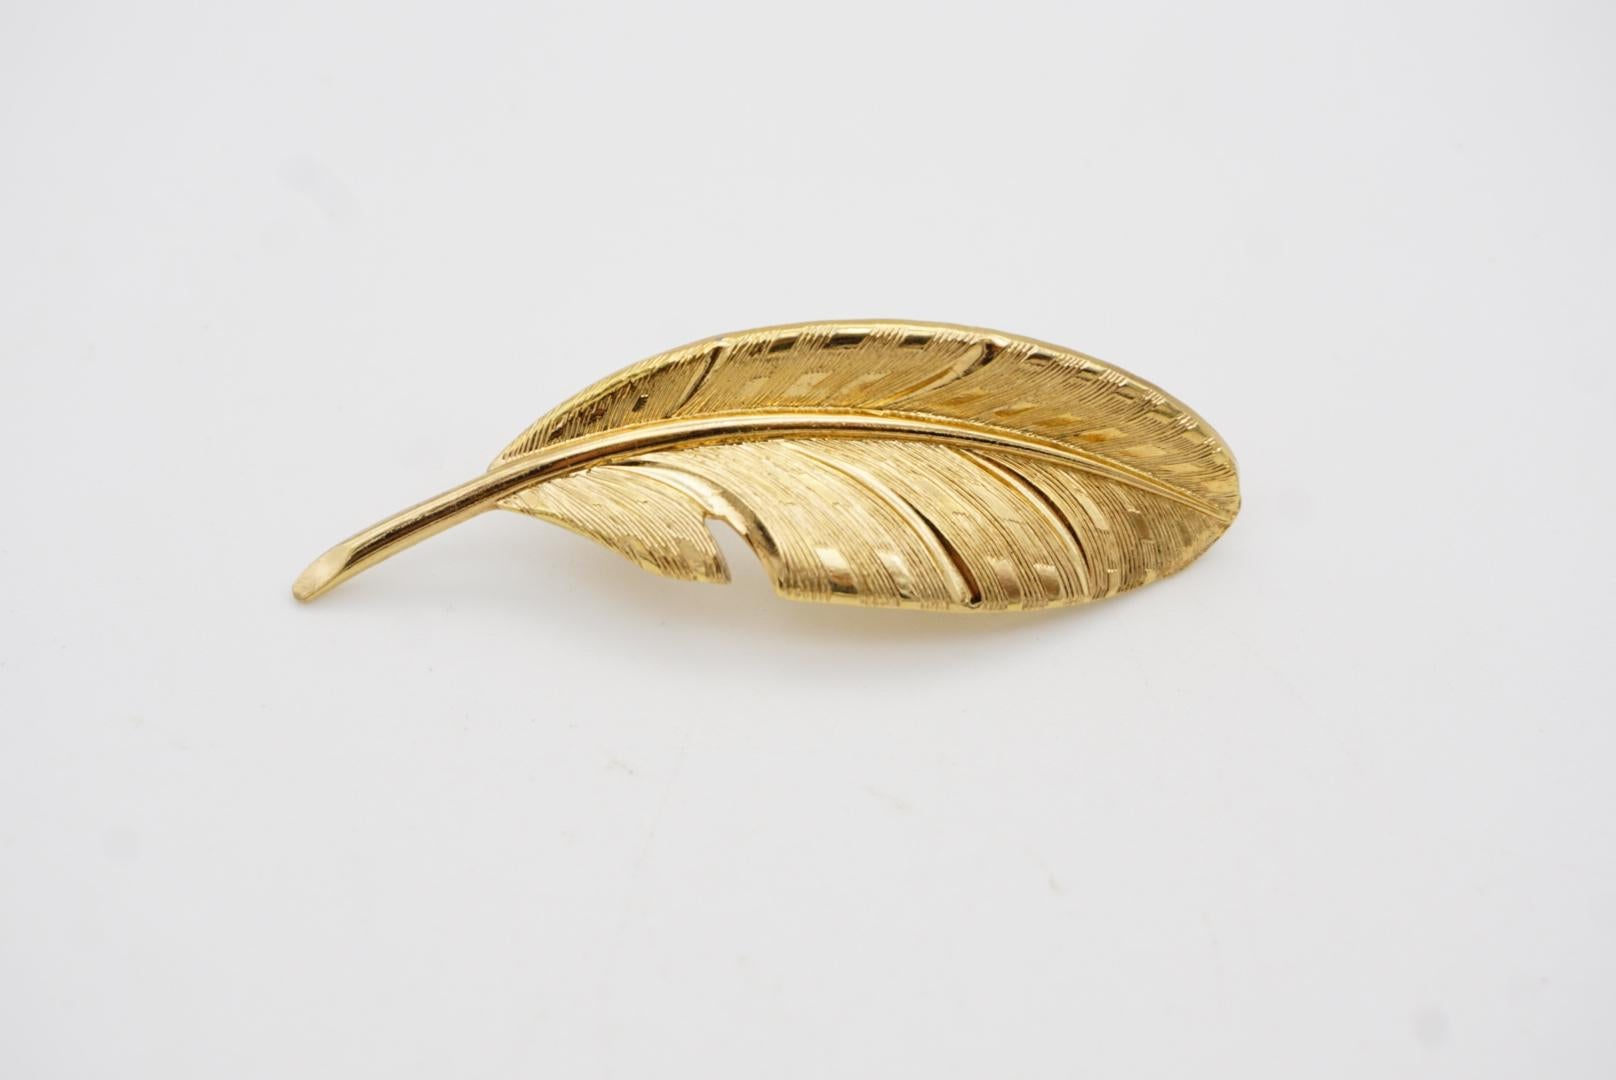 Christian Dior GROSSE 1963 Vintage Vivid Modernist Long Leaf Palm Gold Brooch  For Sale 5